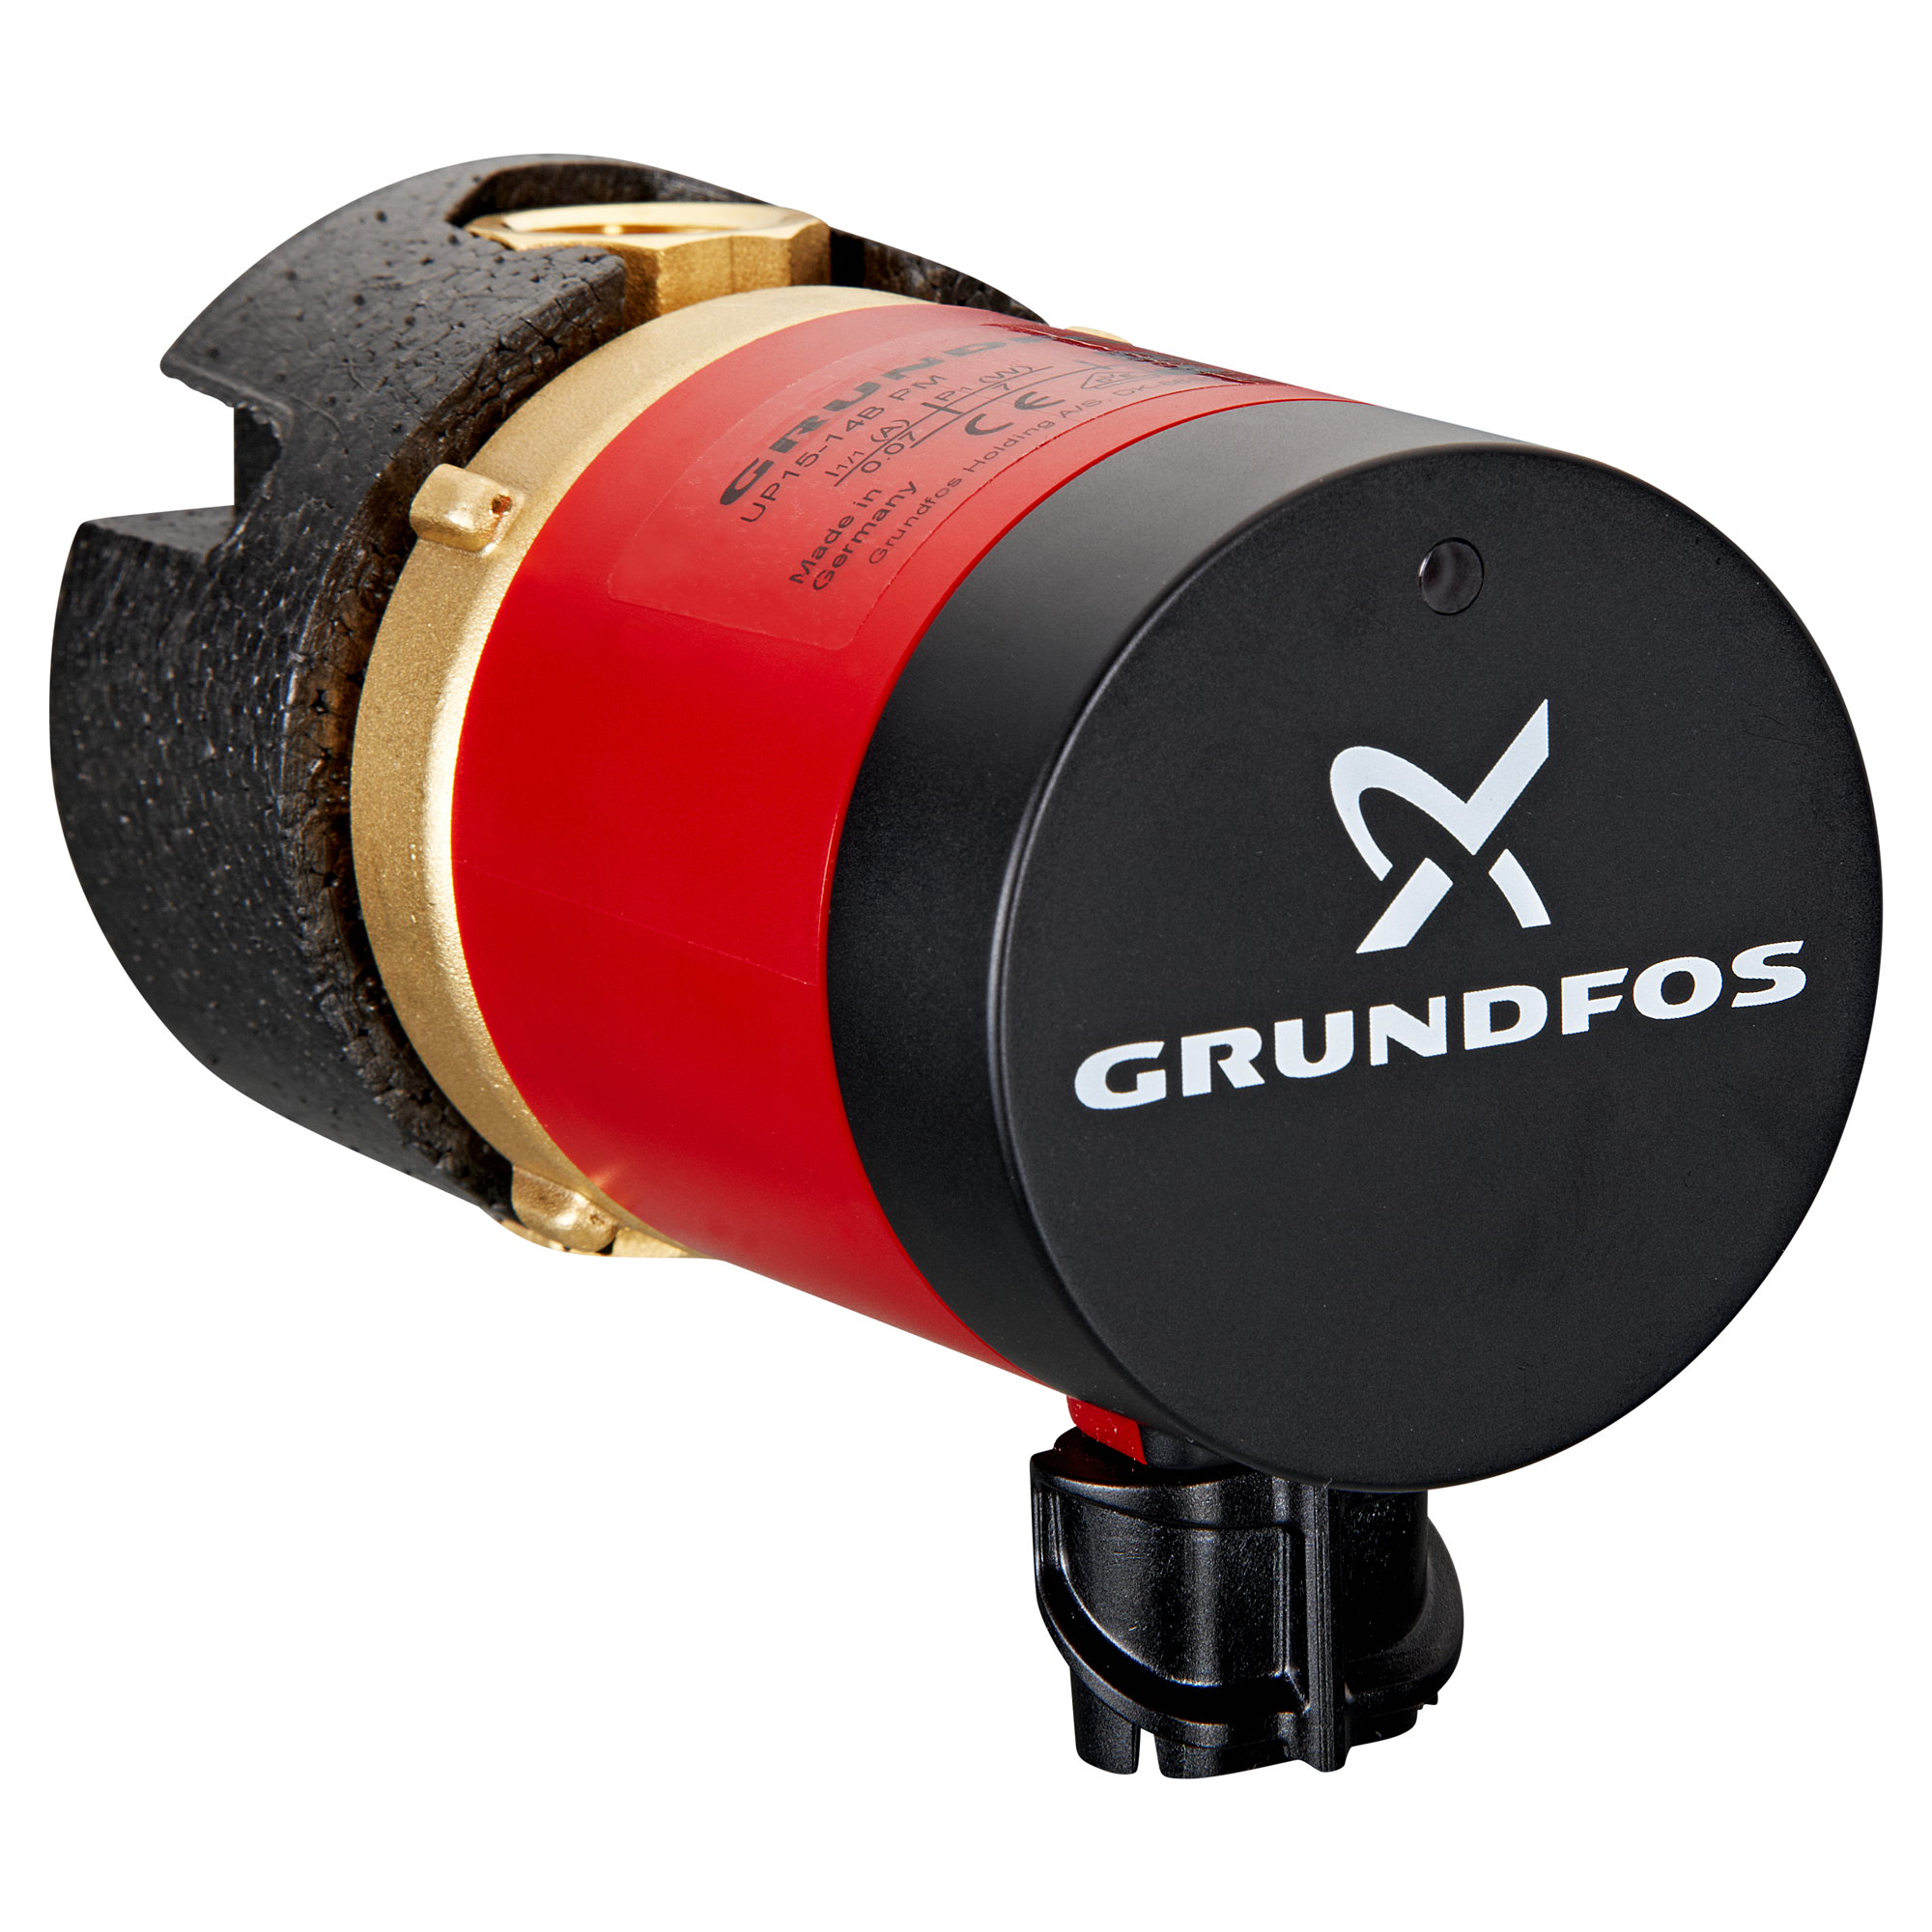 Grundfos UP 20-15 N 150 Zirkulationspumpe/Umwälzpumpe G 1 1/4, 230V -  Heizung und Solar zu Discountpreisen